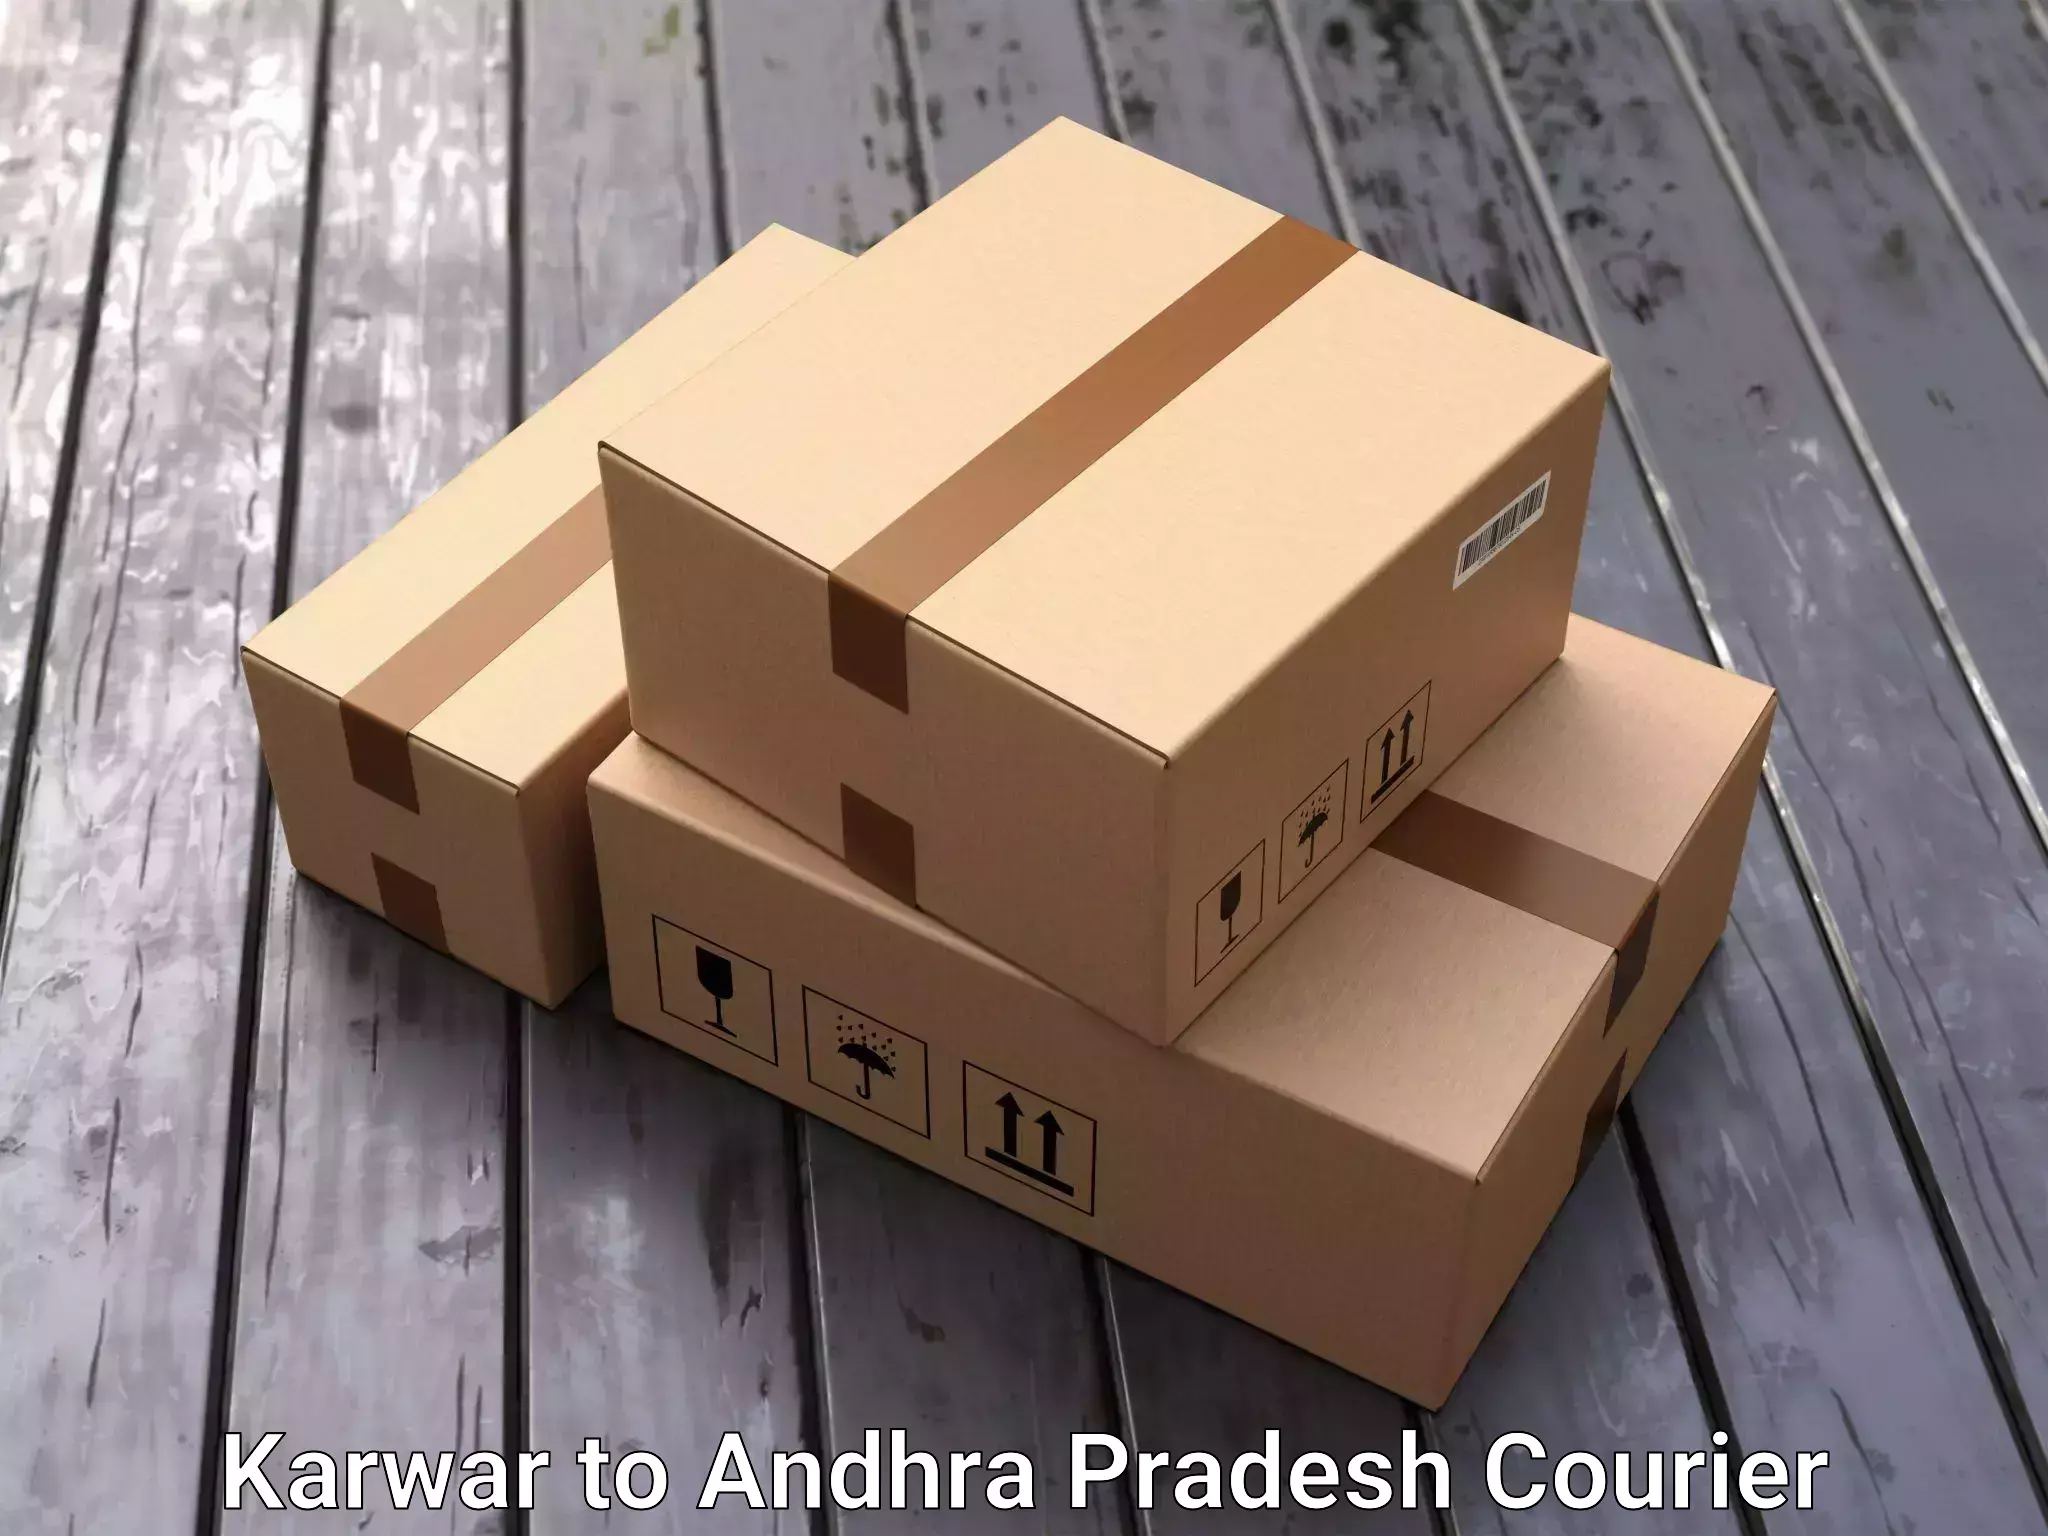 Moving and handling services Karwar to Koduru